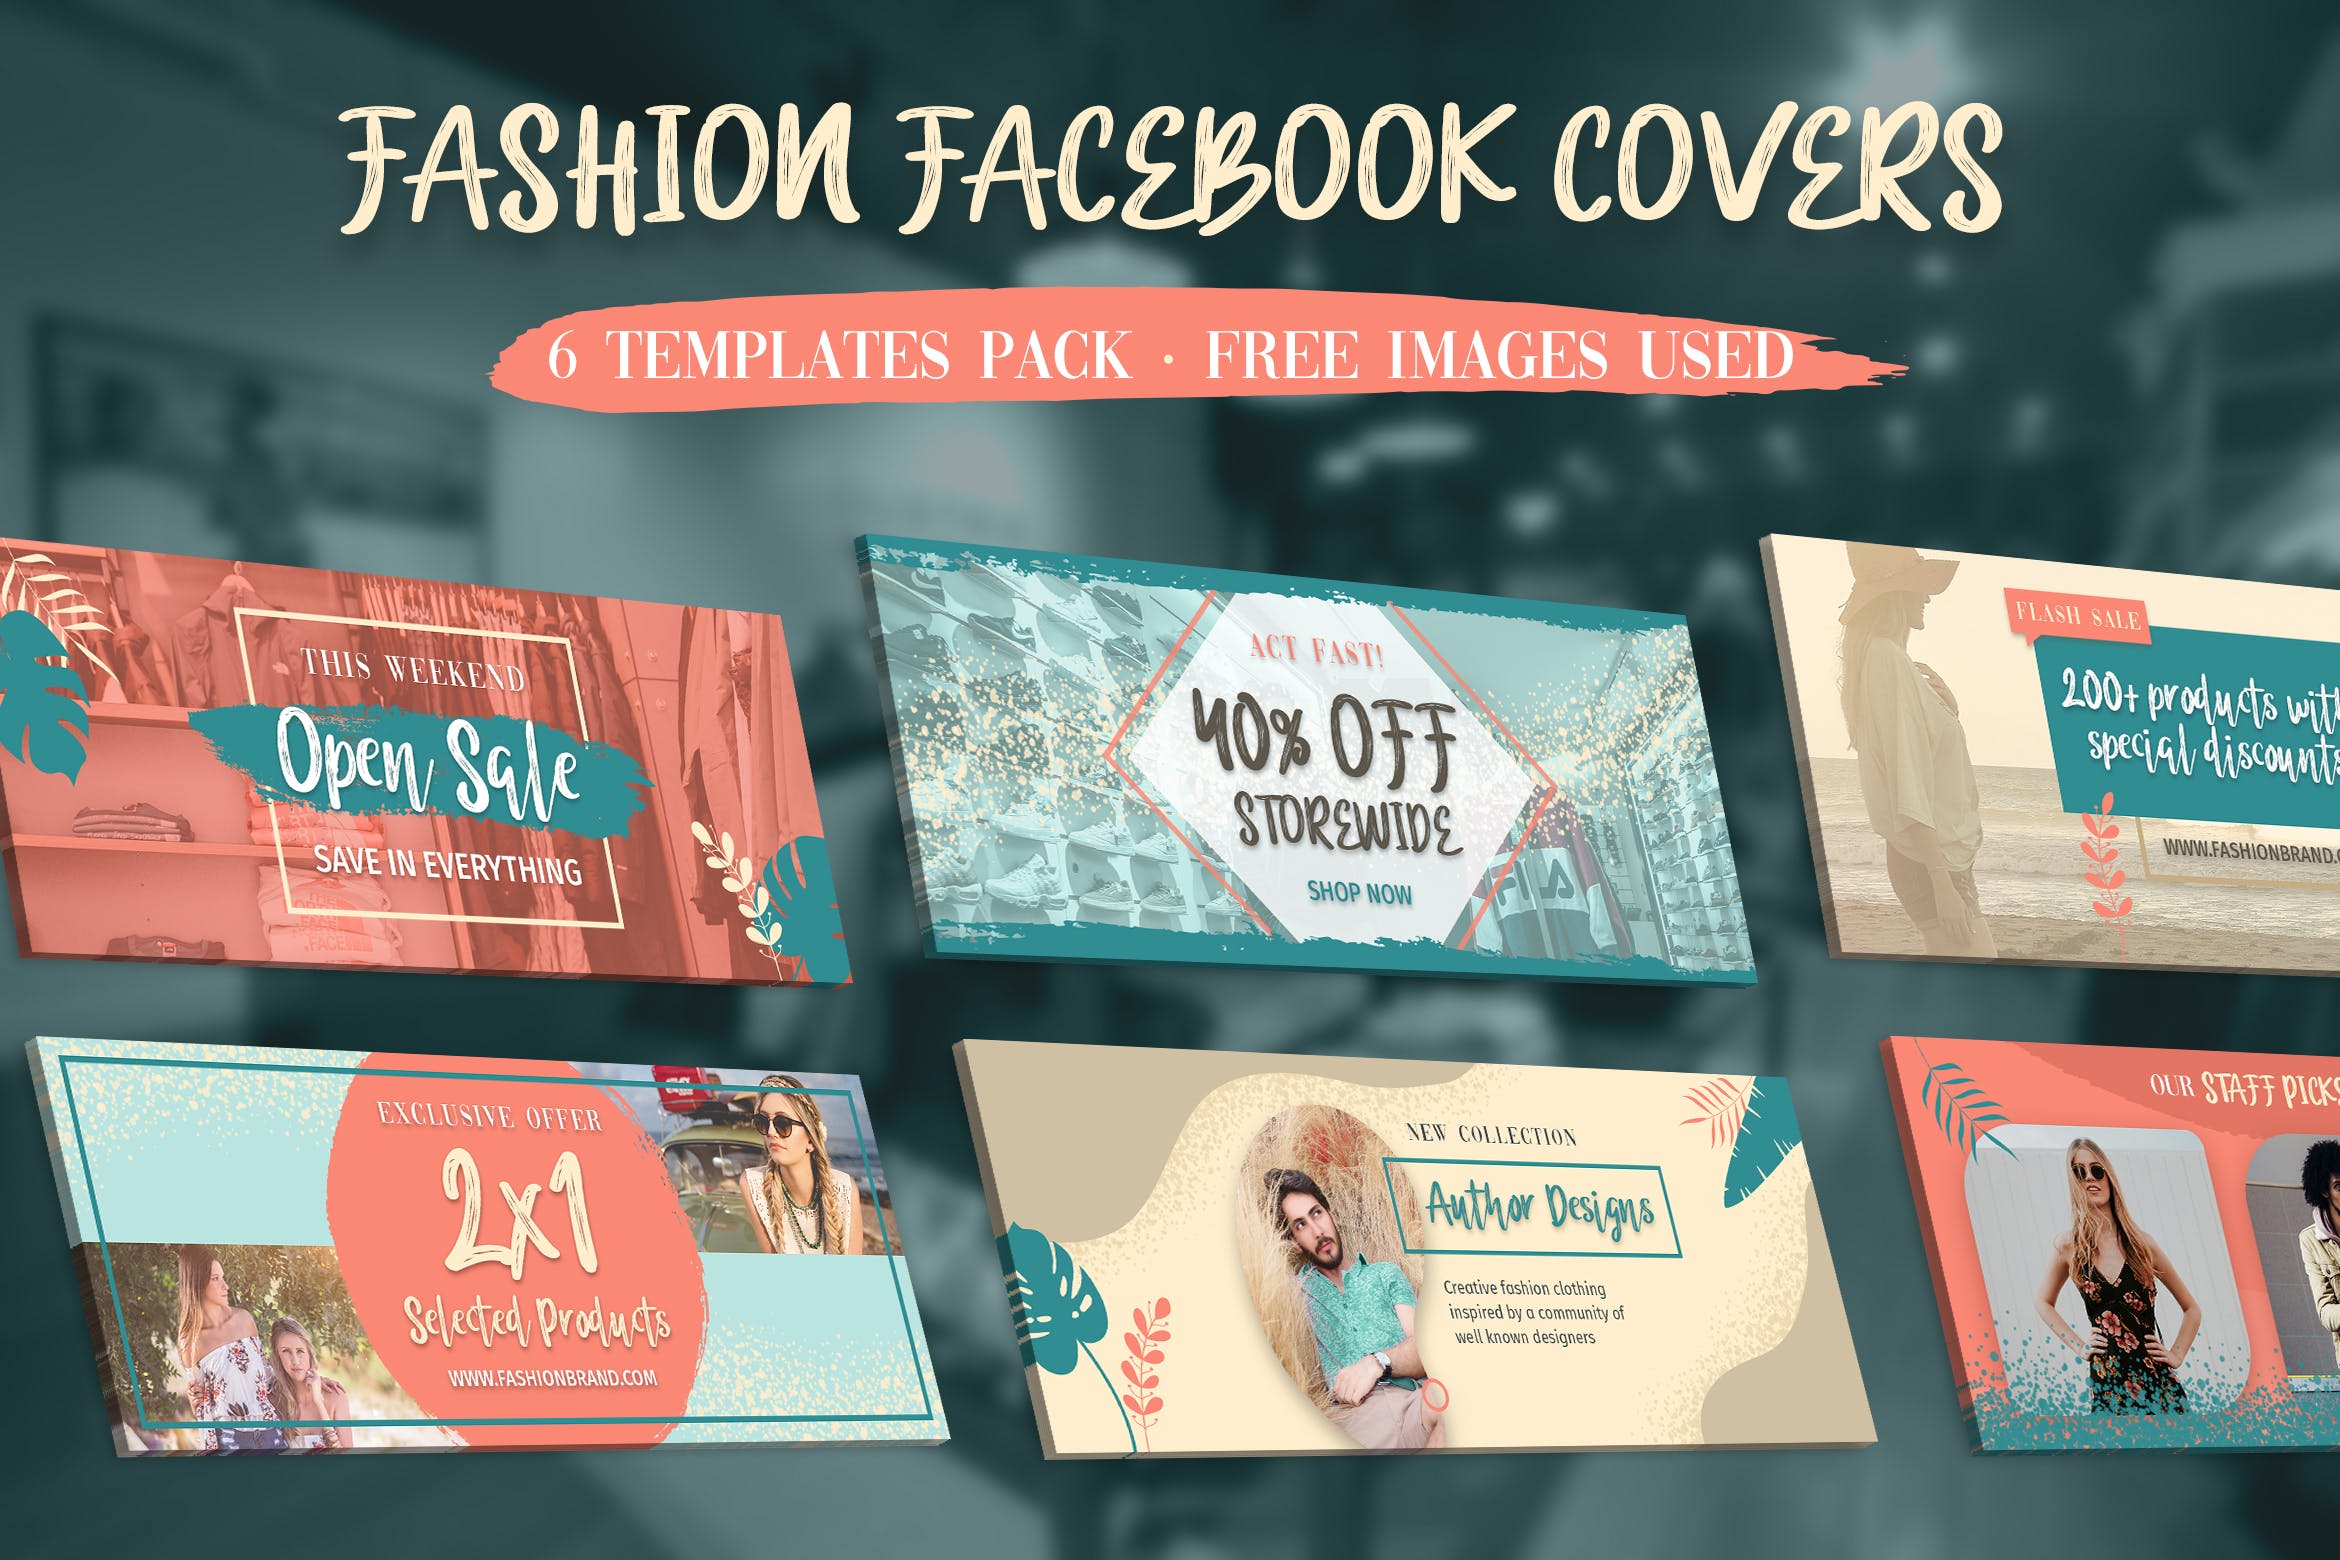 时尚品牌推广Facebook主页封面设计模板素材中国精选 Facebook Covers插图